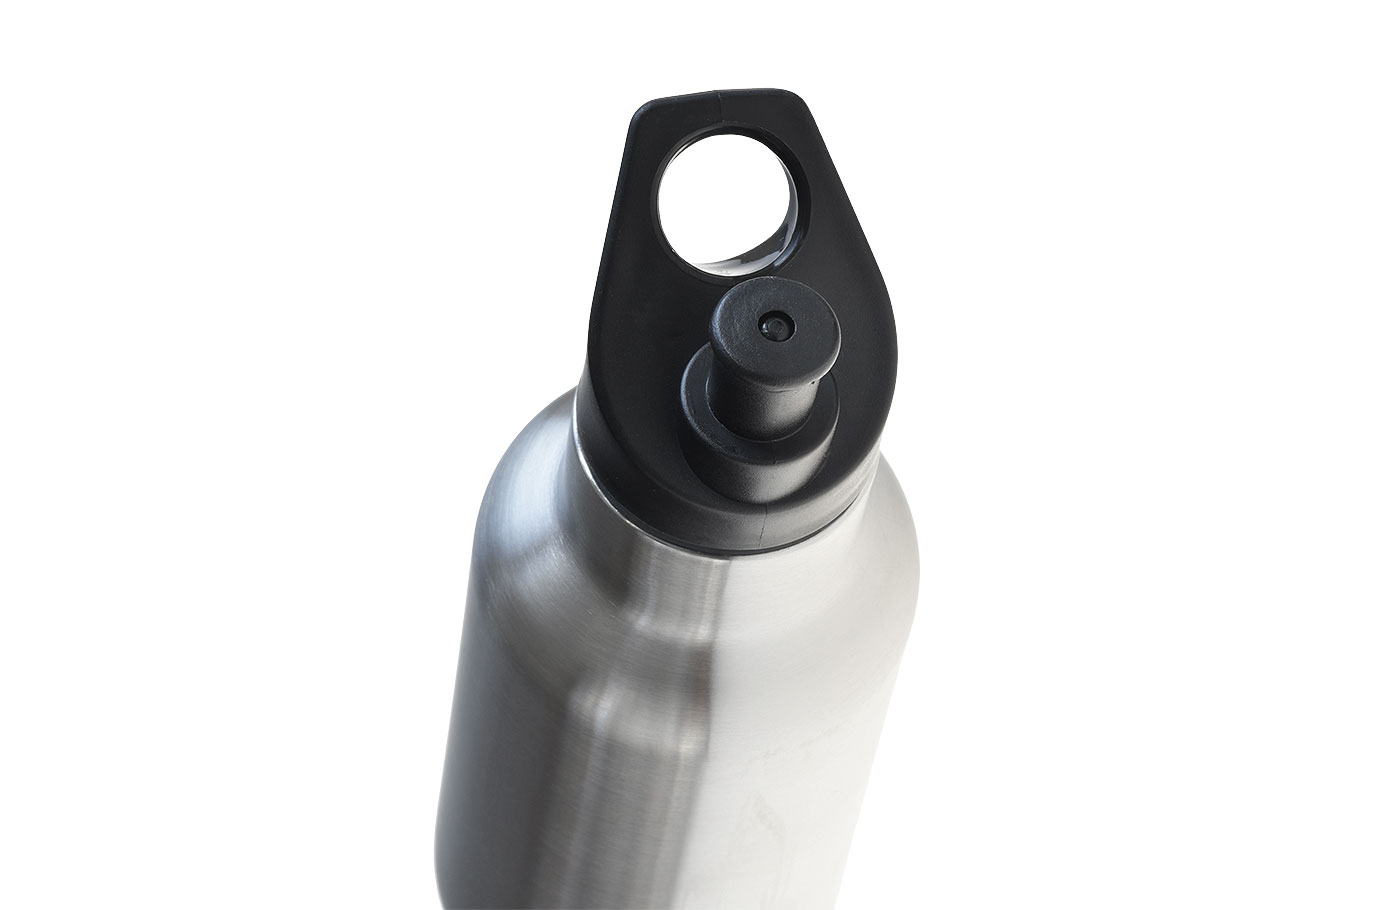 Popup-Deckel für Trinkflasche - TFL 002. BPA-freies PP mit Silikondichtung. Ansicht von oben auf Flasche.